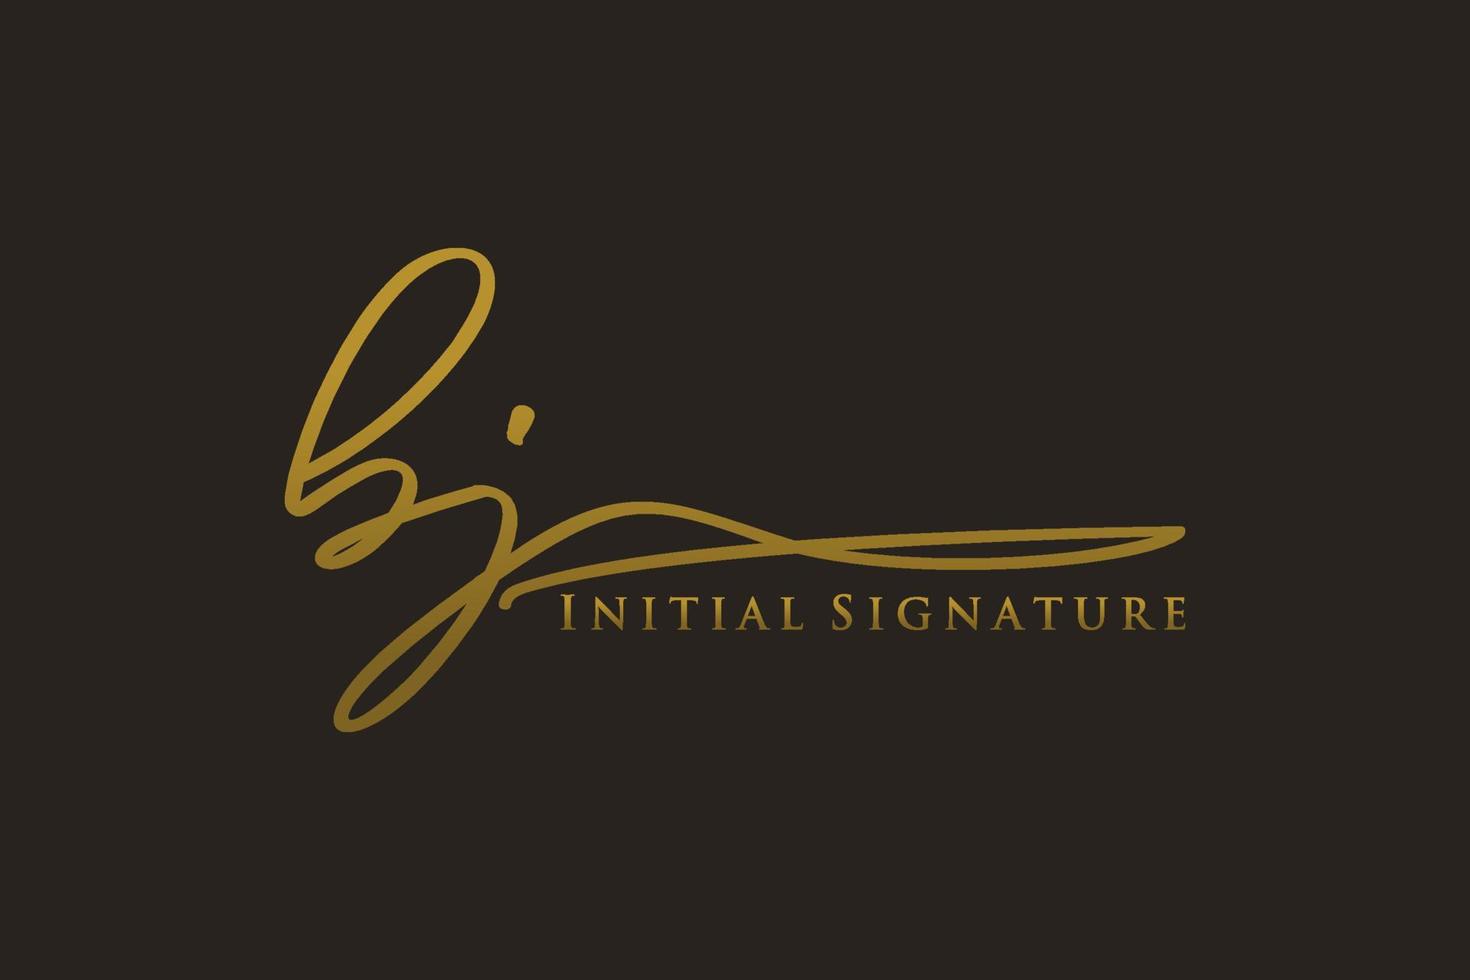 plantilla de logotipo de firma de letra bj inicial logotipo de diseño elegante. ilustración de vector de letras de caligrafía dibujada a mano.